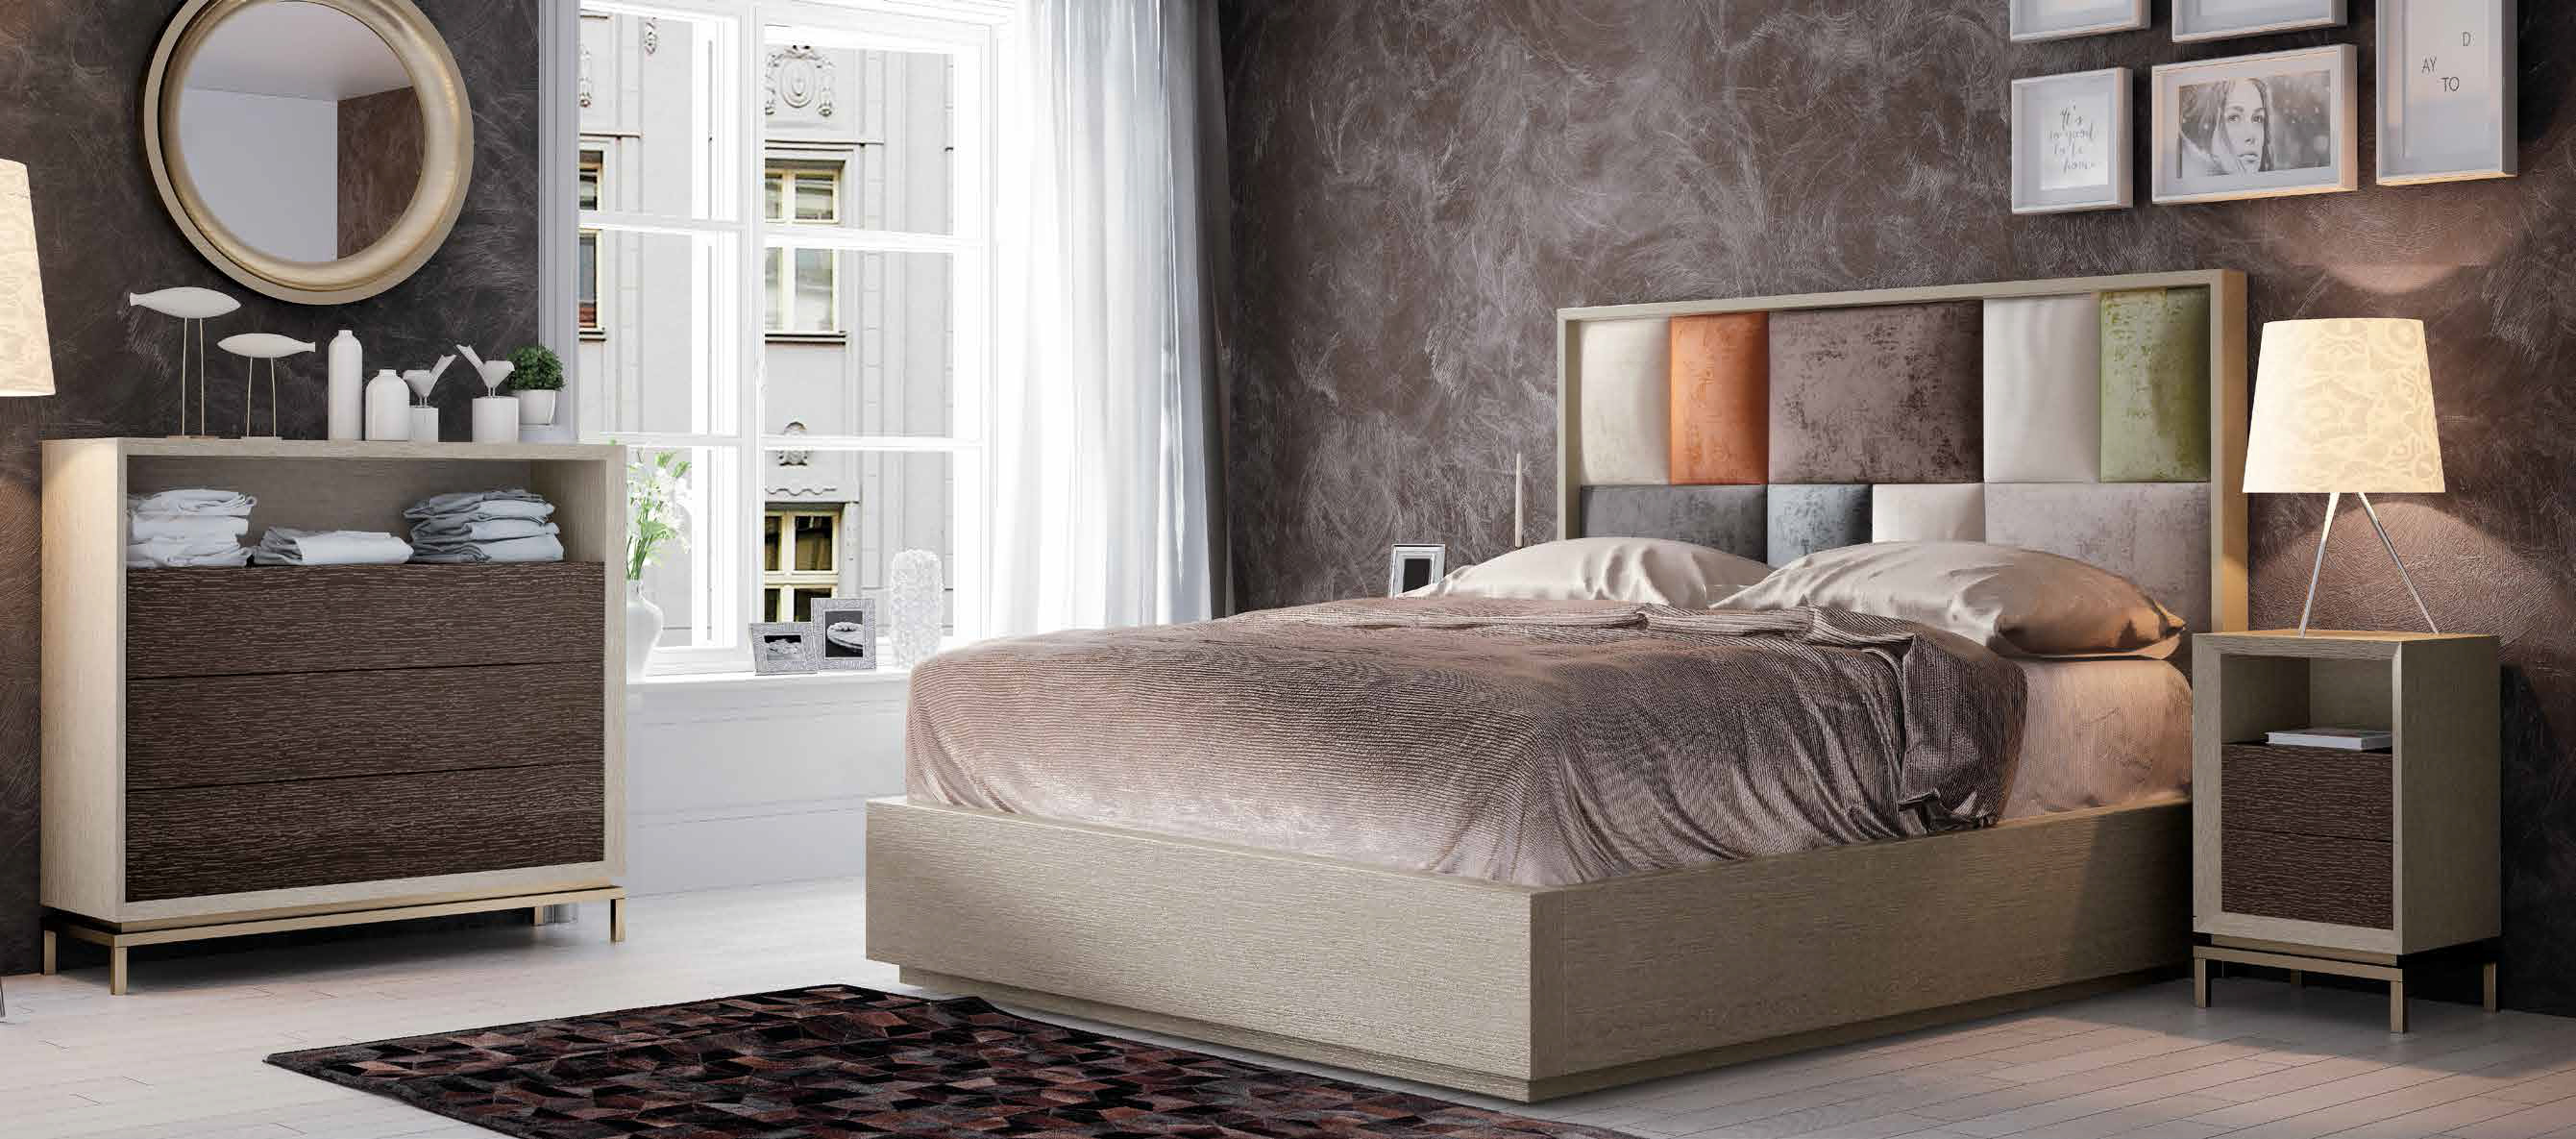 Brands Franco Furniture Avanty Bedrooms, Spain DOR 46